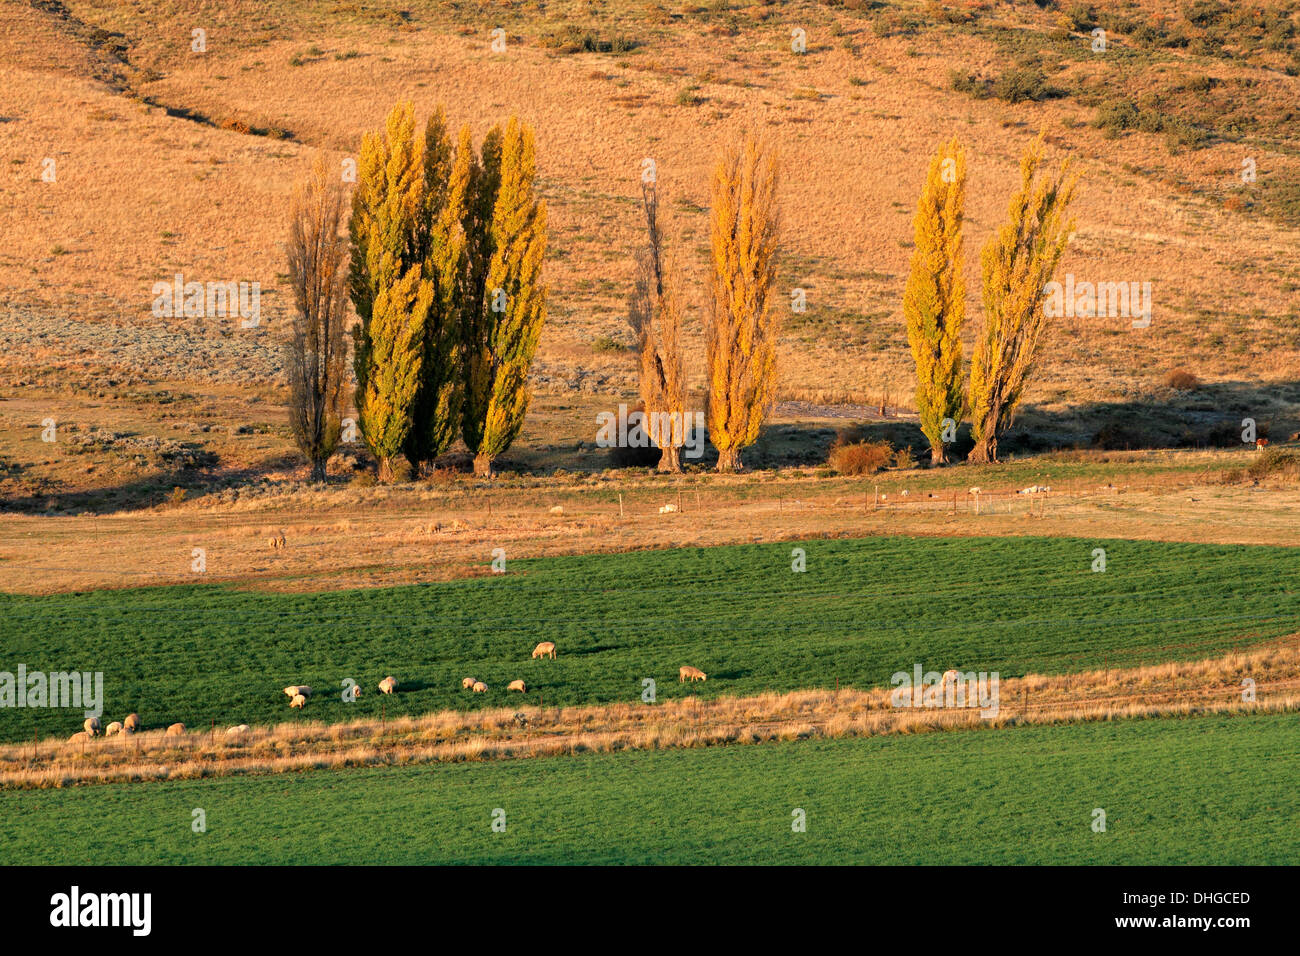 Paesaggio rurale con alberi, pascoli e pecore al pascolo, nel tardo pomeriggio, Sud Africa Foto Stock